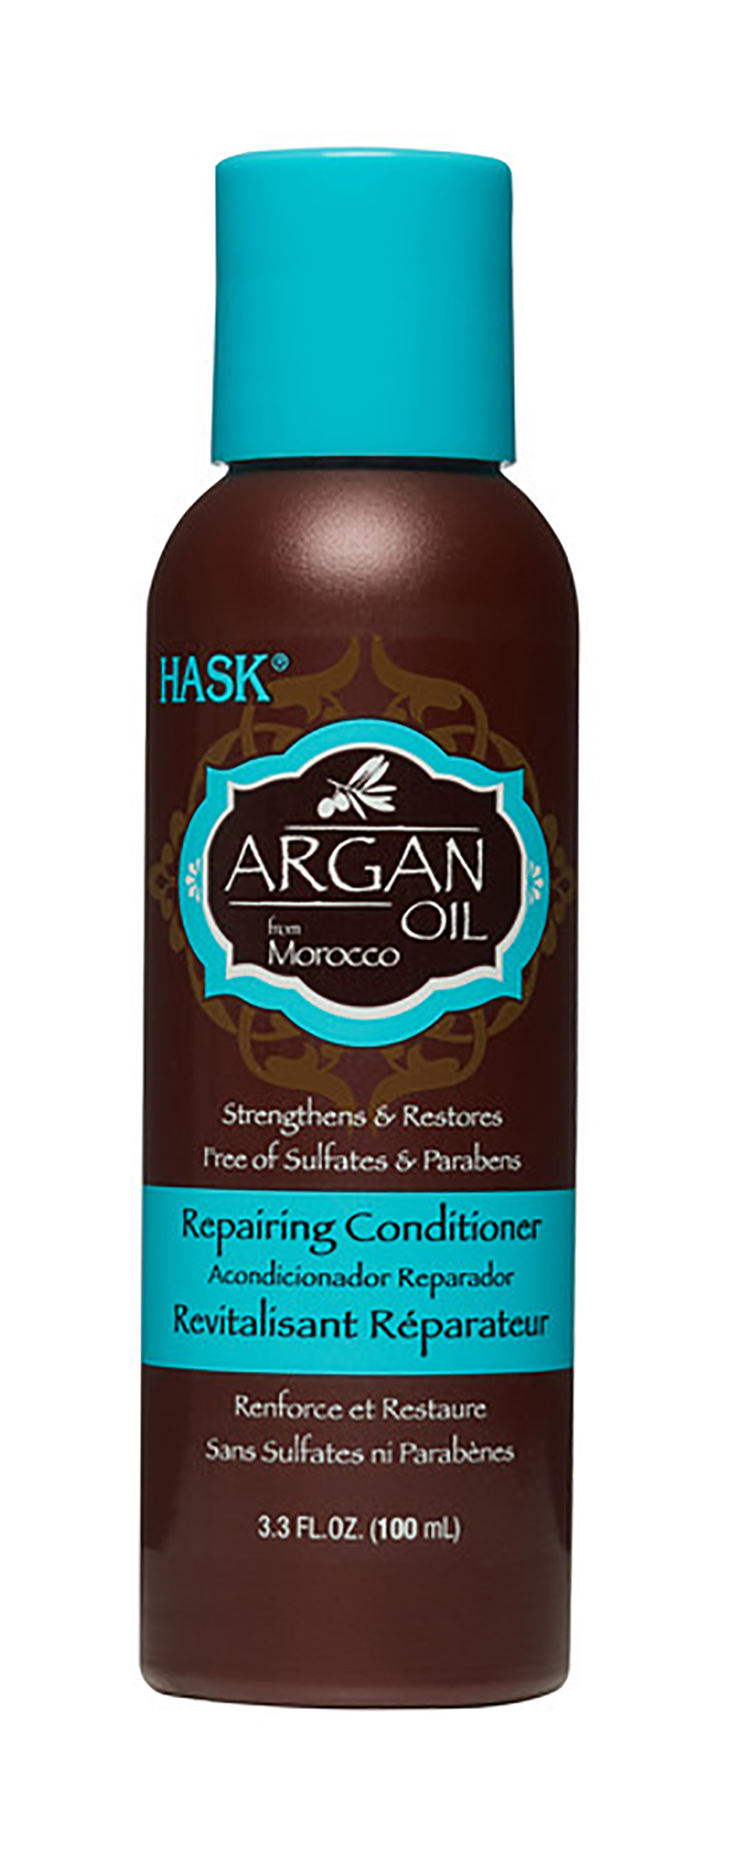 Кондиционер для волос Hask Argan Oil Repairing Conditioner Travel Size 100 мл bioblas питательный увлажняющий кондиционер для волос с аргановым маслом botanic oils